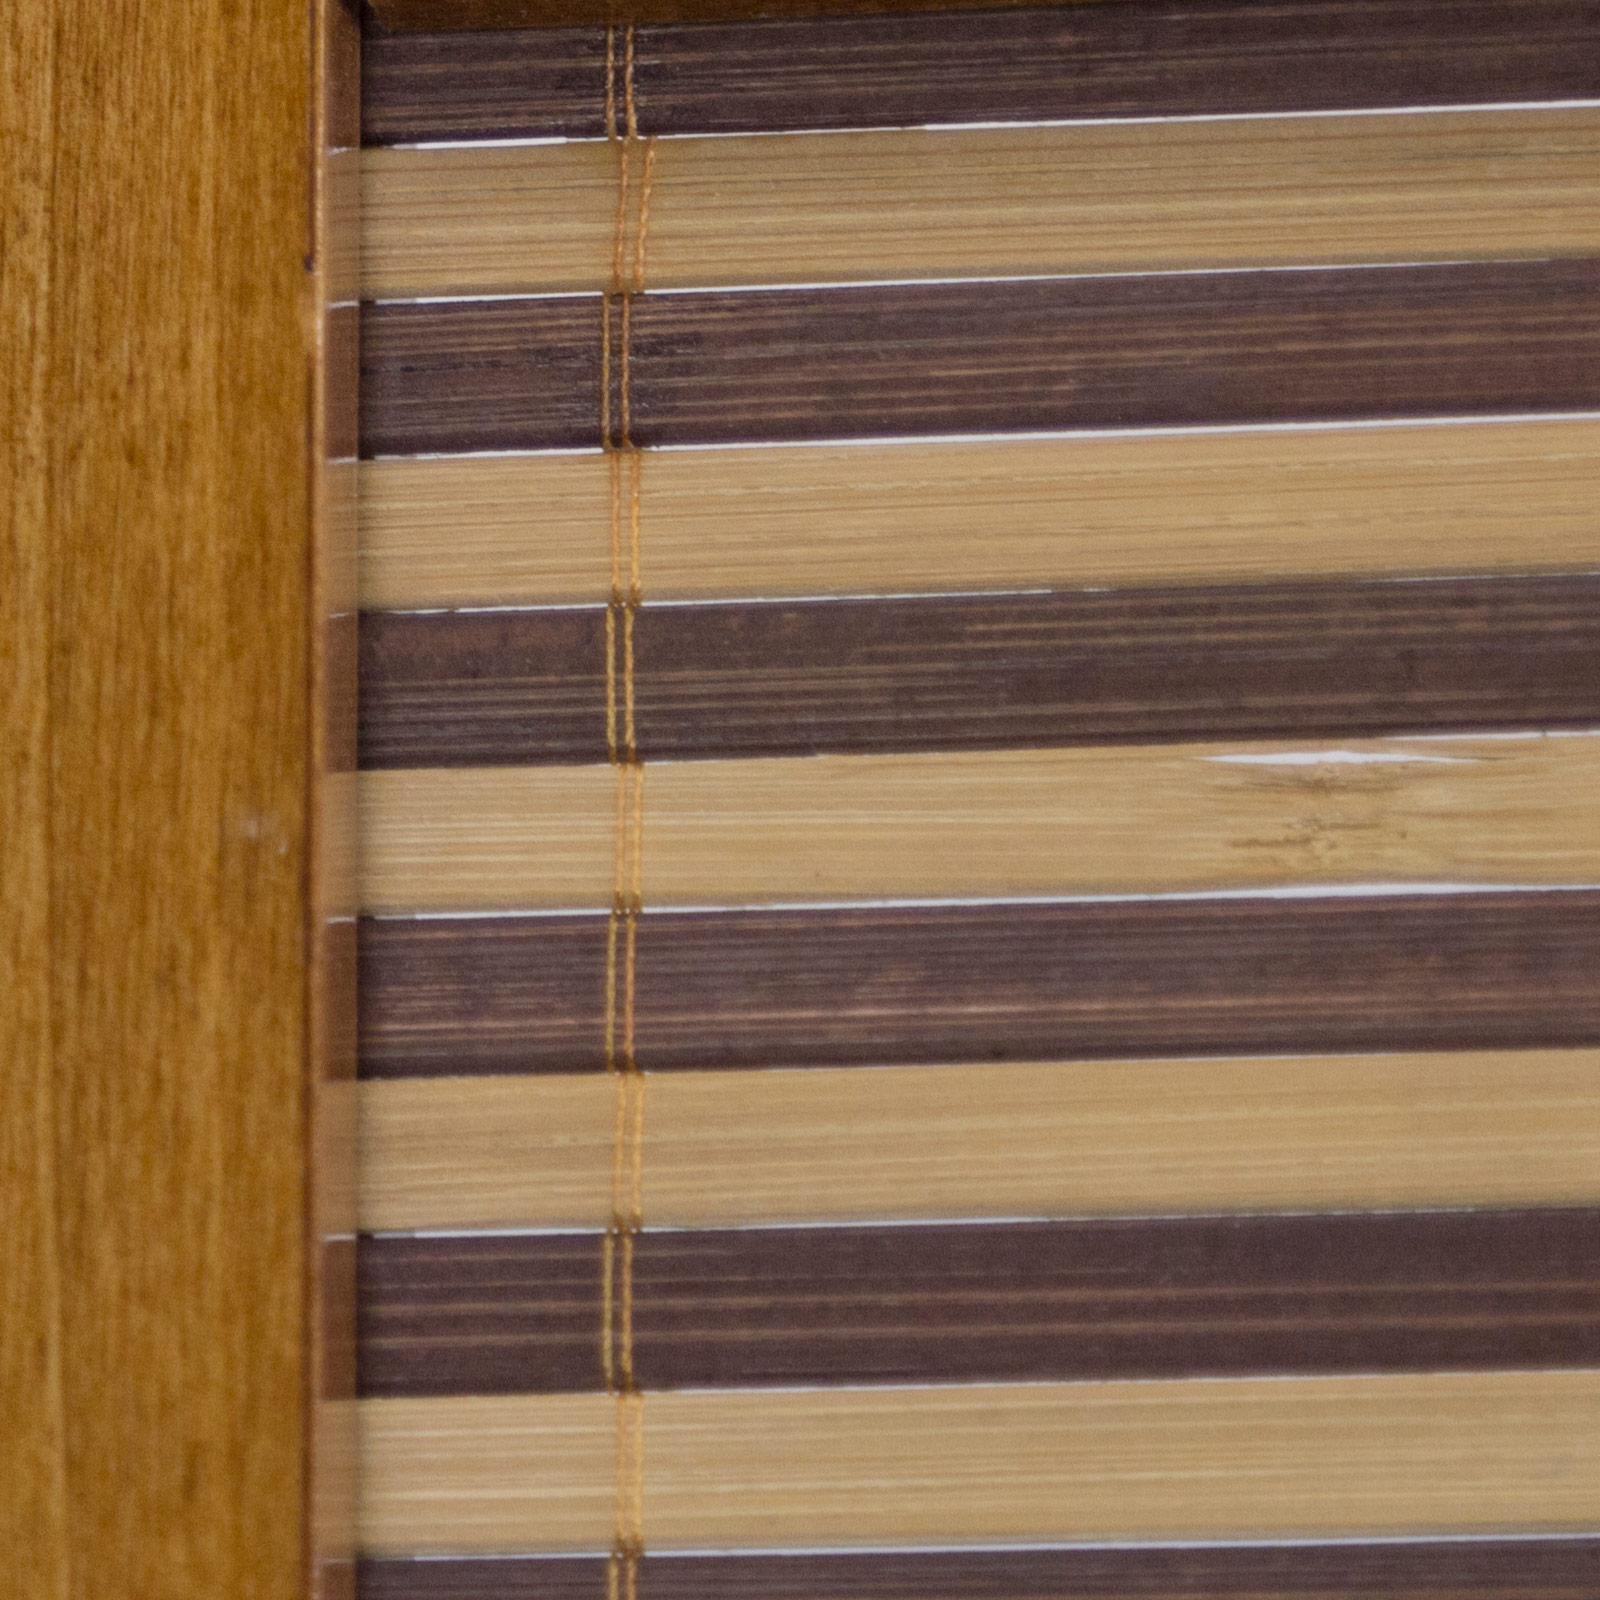 Paravent Raumteiler 3 teilig Holz Trennwand Sichtschutz Braun